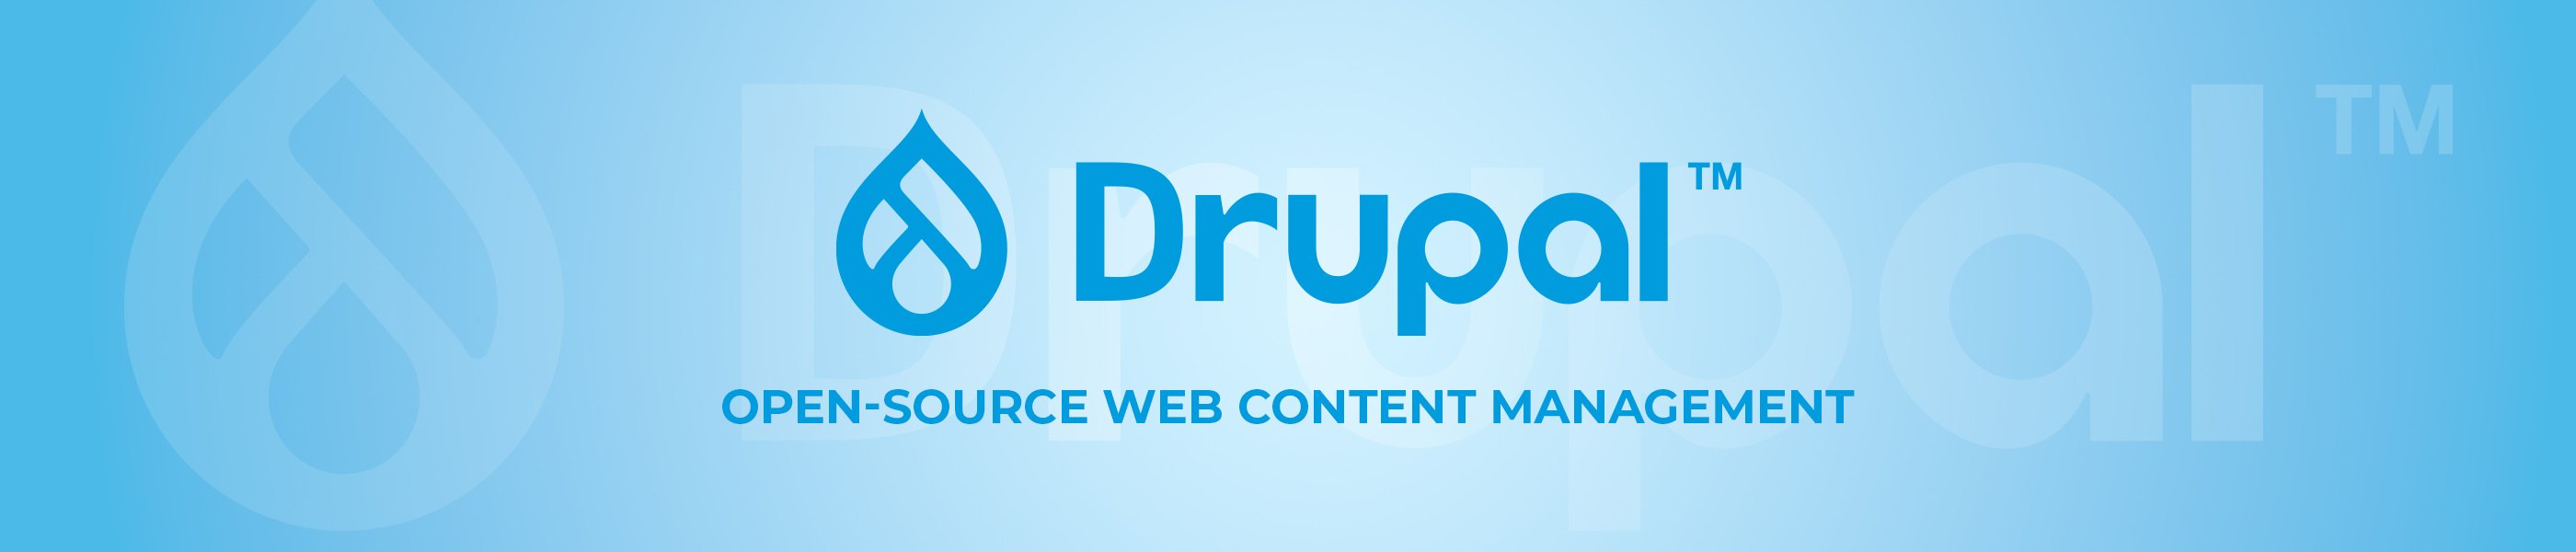 Drupal - open-source web content management